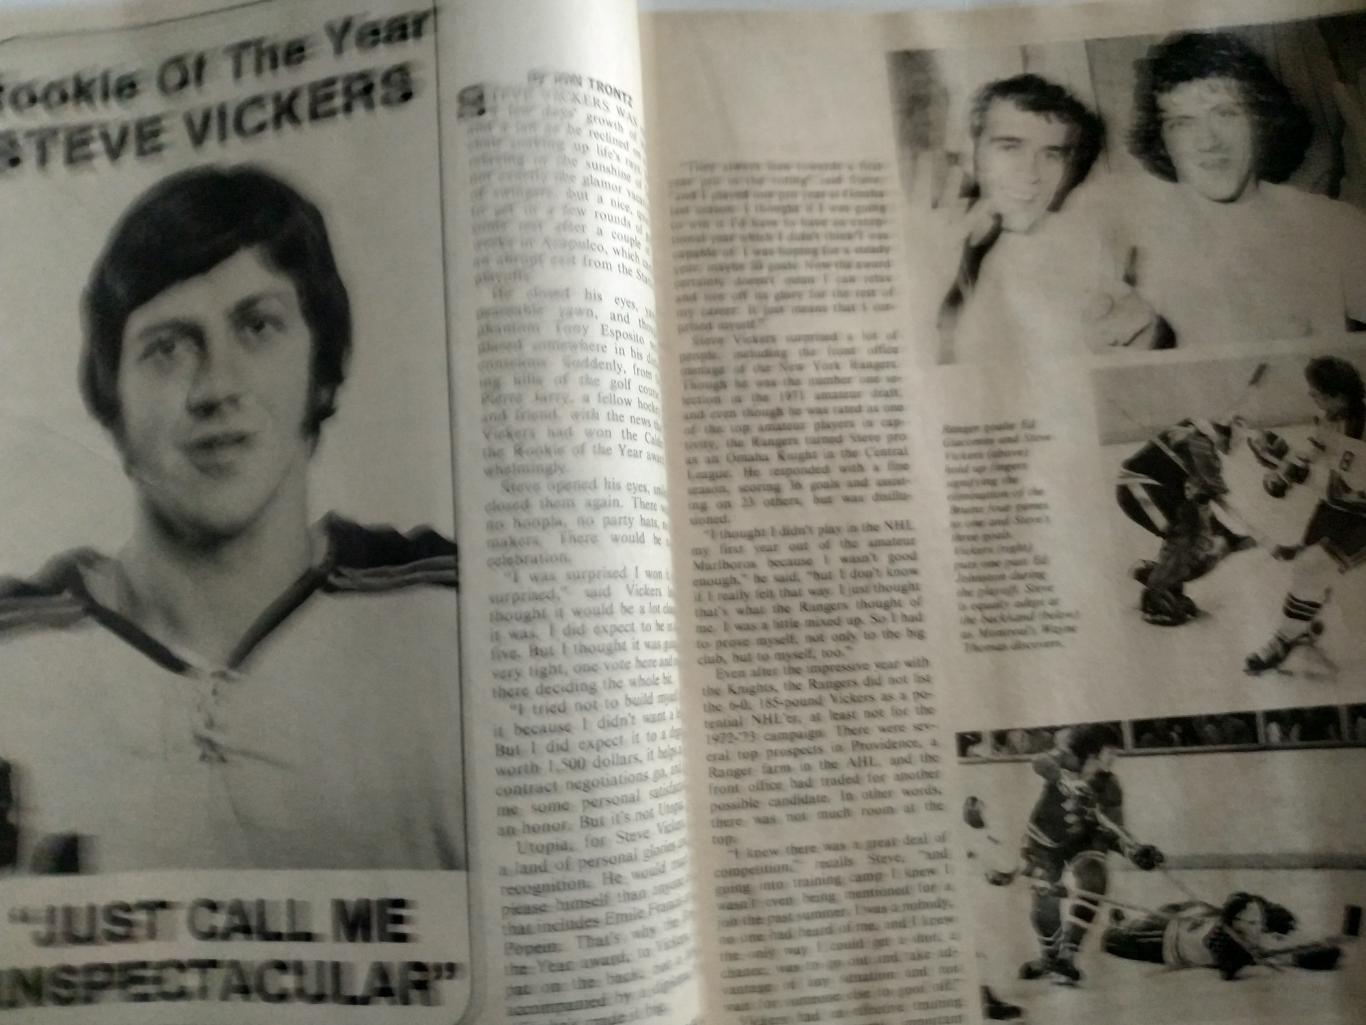 ЖУРНАЛ СПРАВОЧНИК НХЛ СПОРТ БЕН СТРОНГ ХОКЕЕЙ NOV 1973 NHL BEN STRONG HOCKEY 3